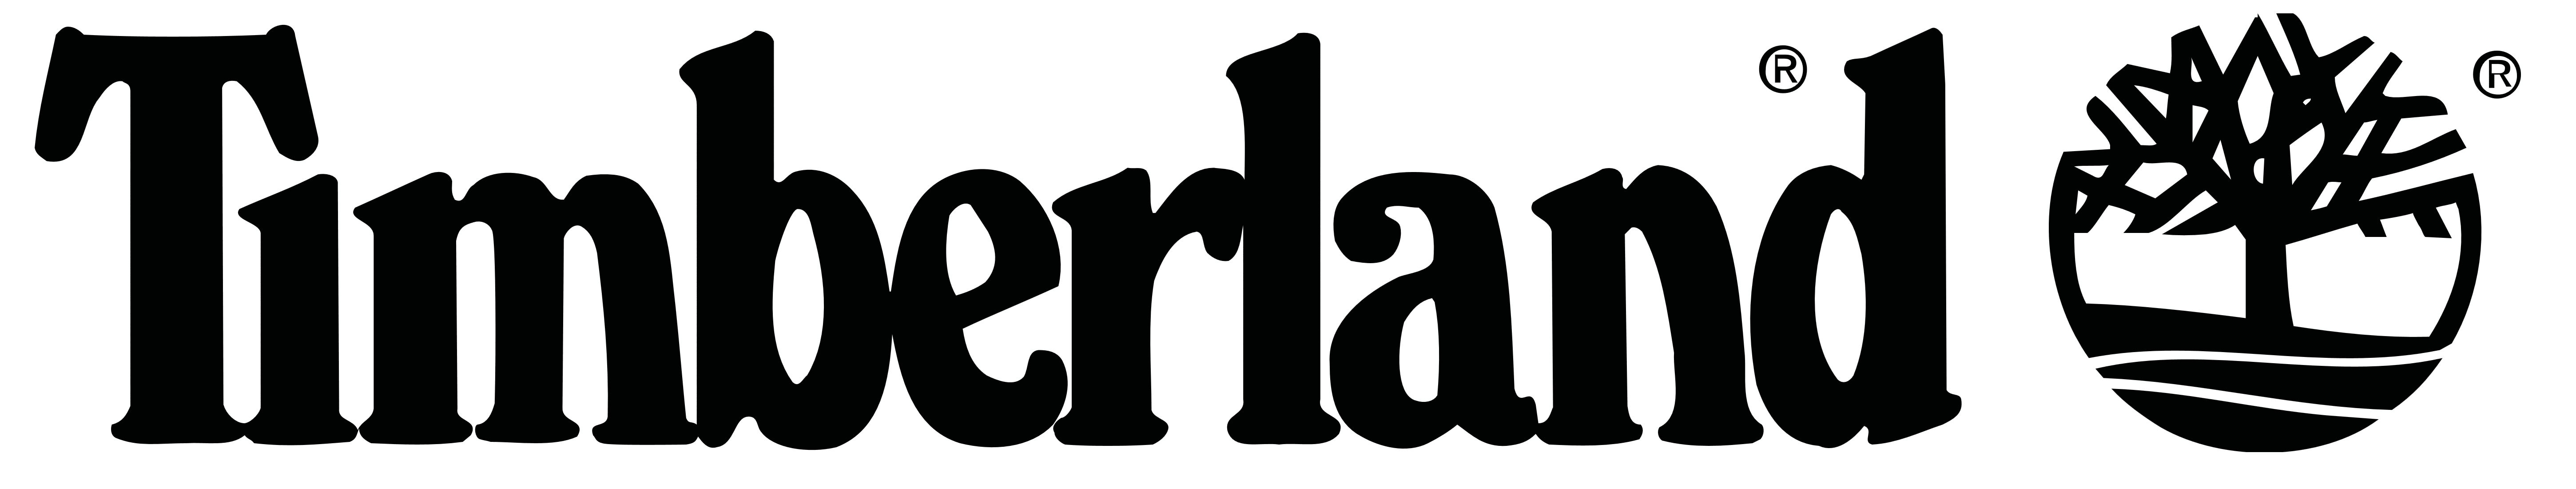 Timberland logo, logotype